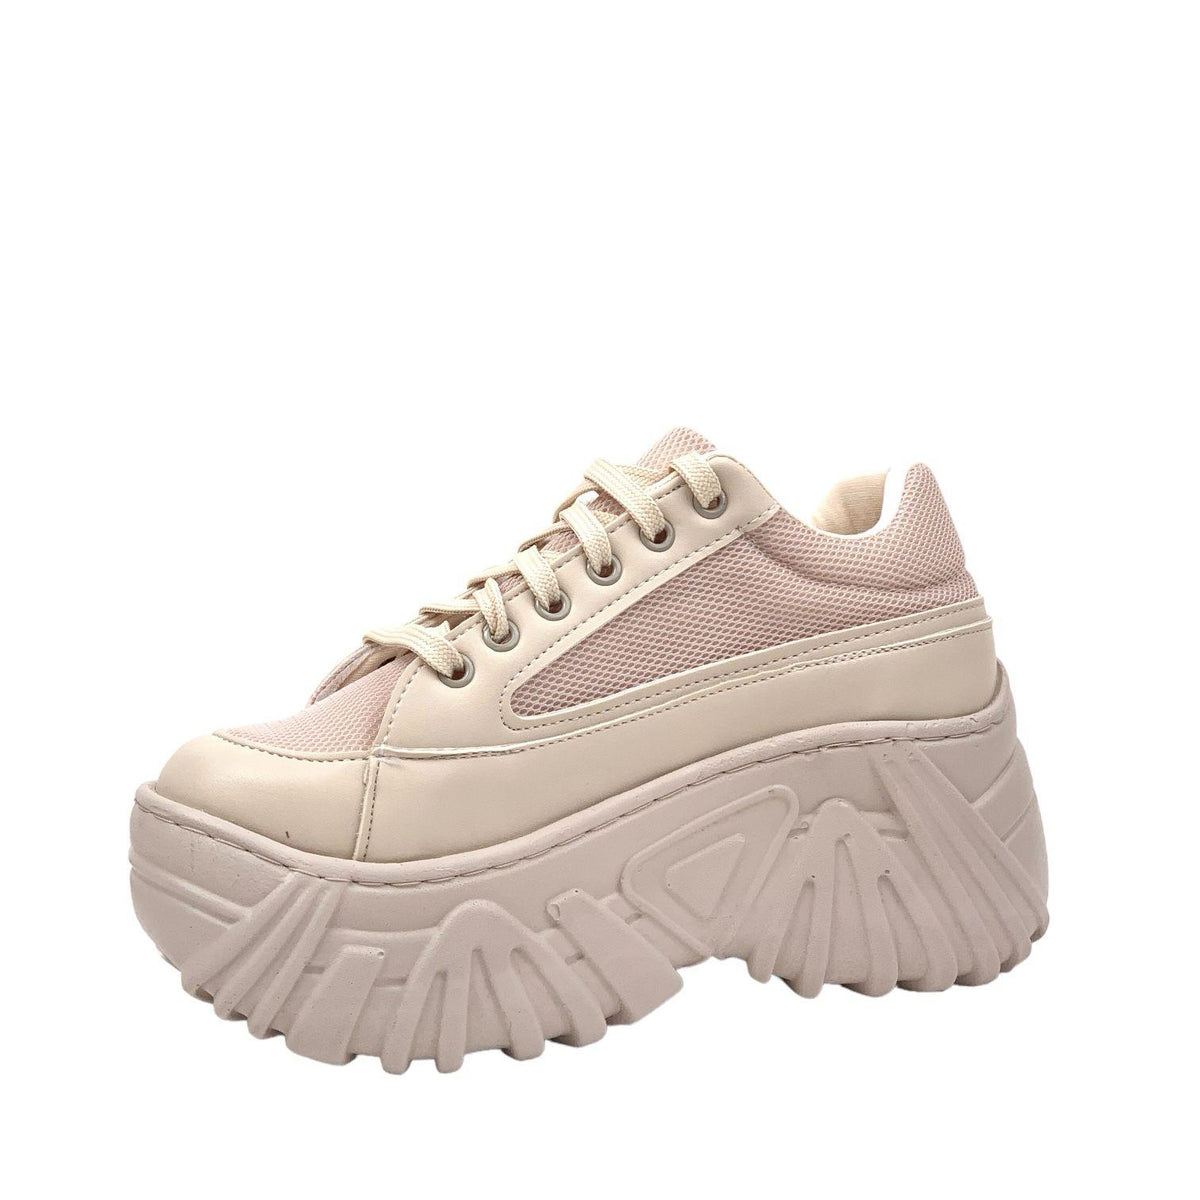 Women's beige high sole sneaker sports shoes